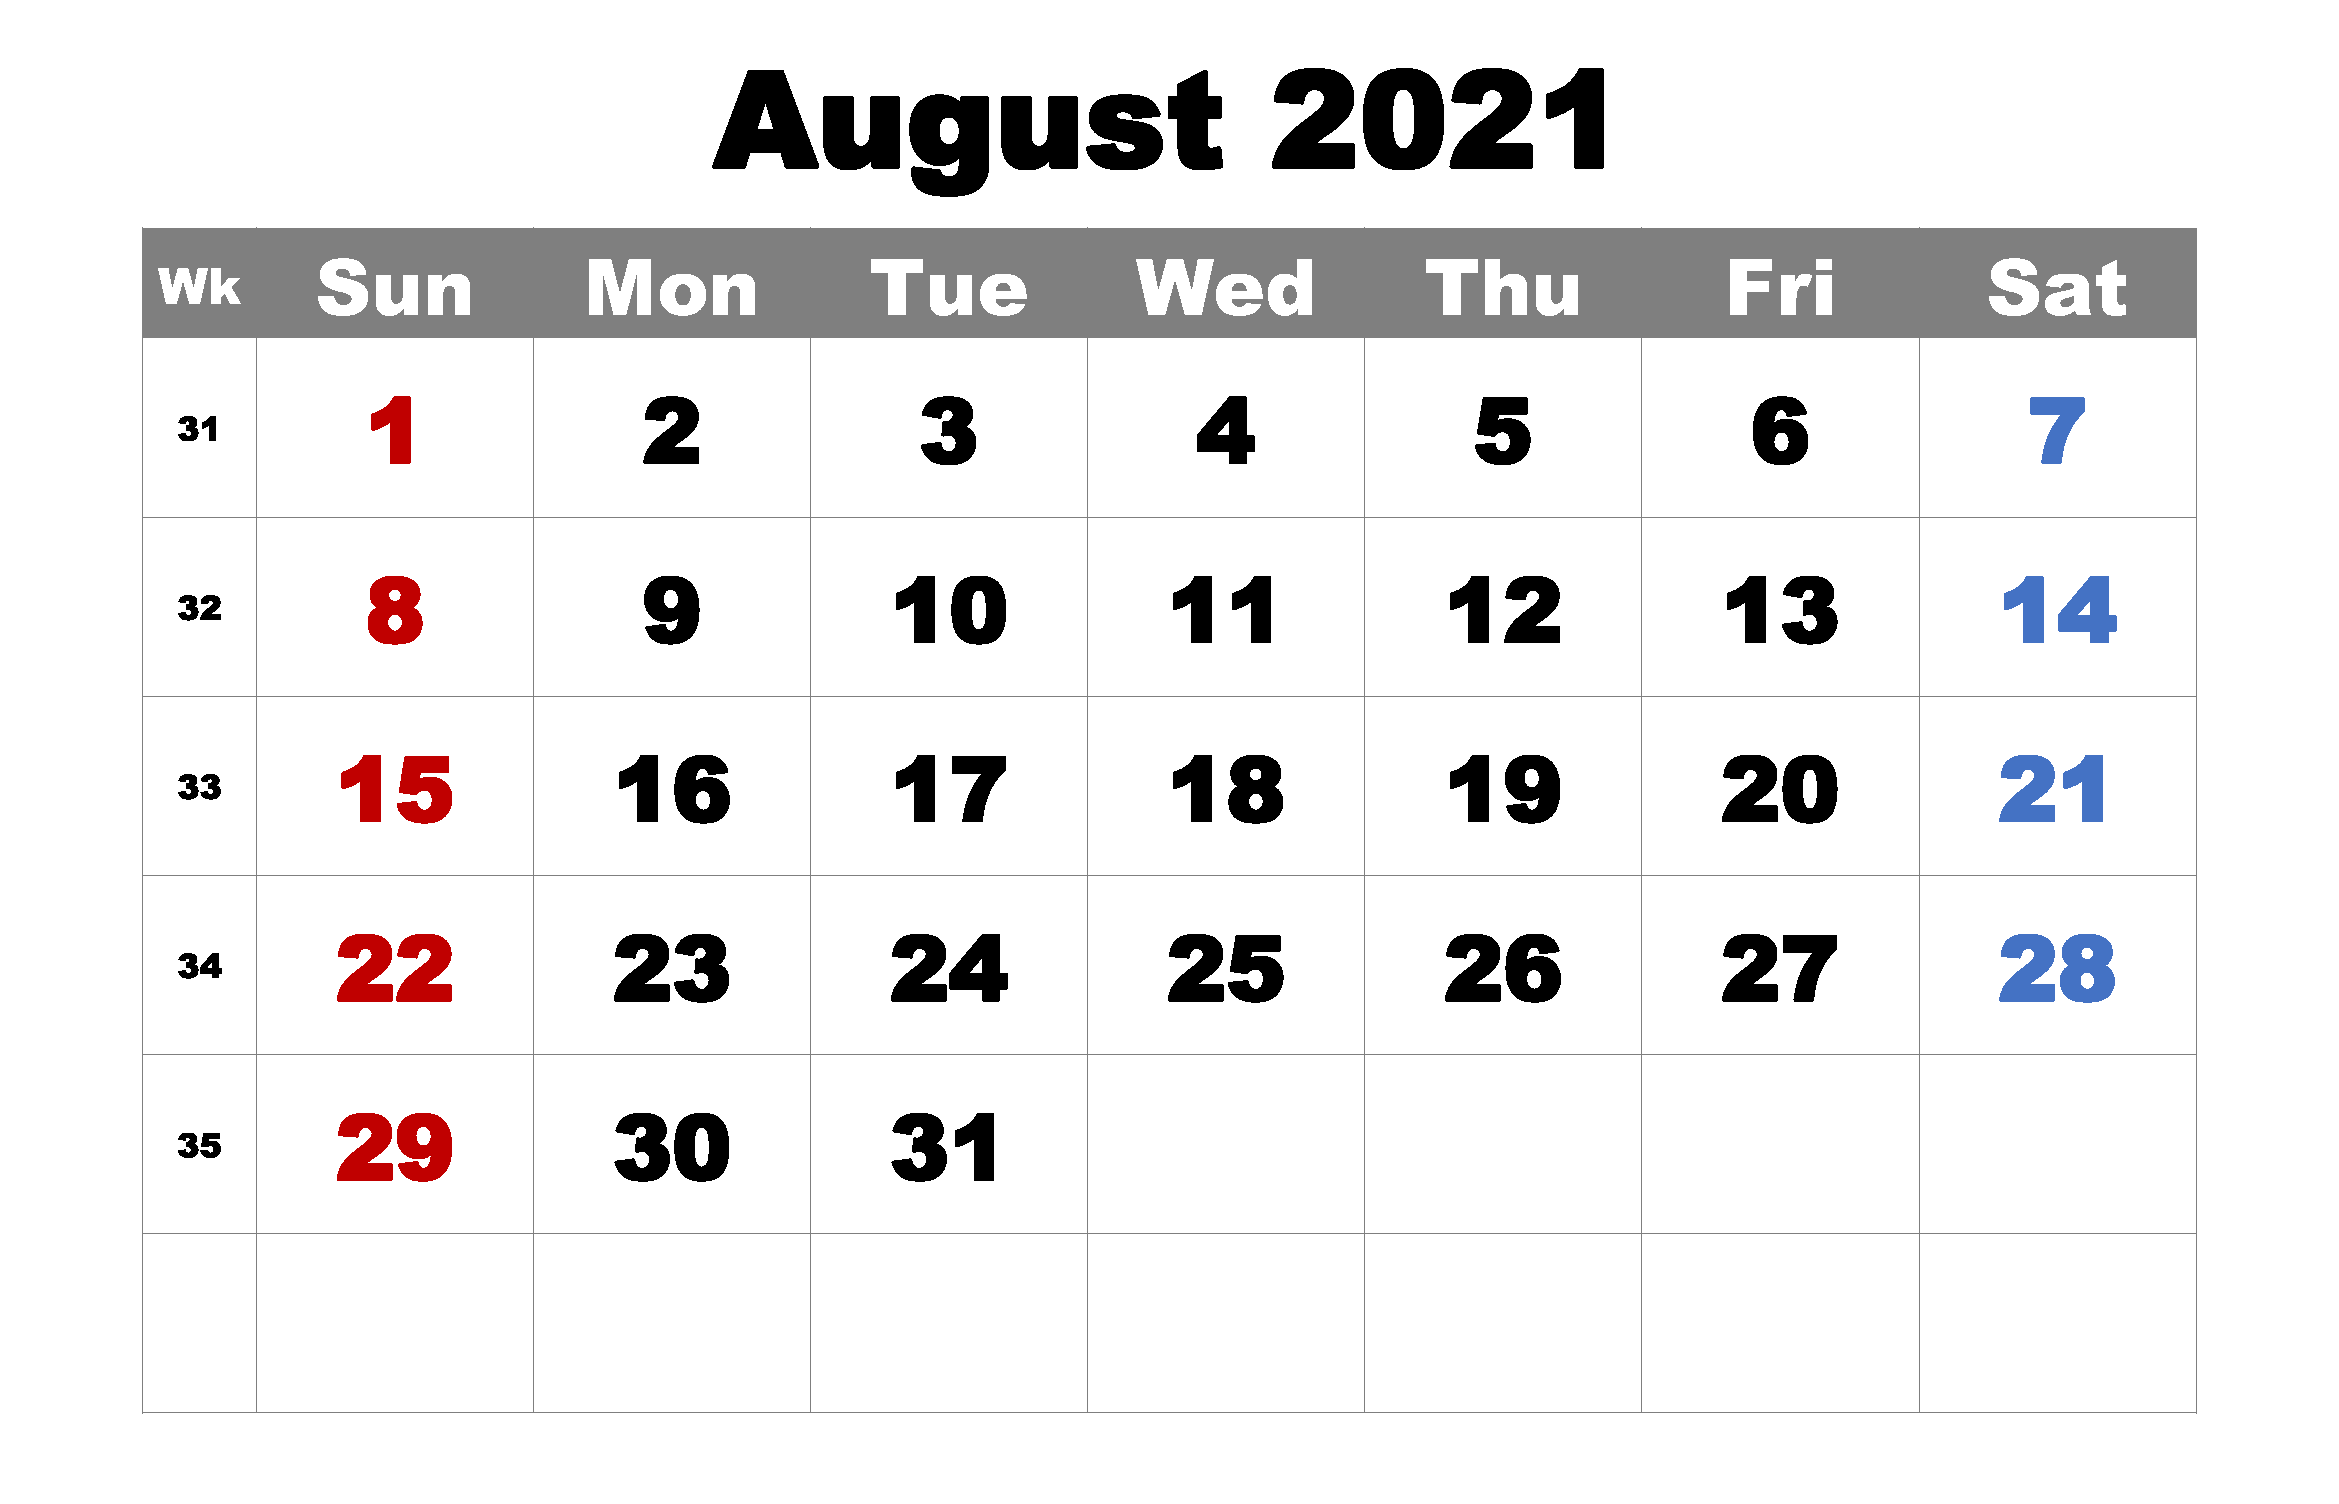 August 2021 Calendar Template